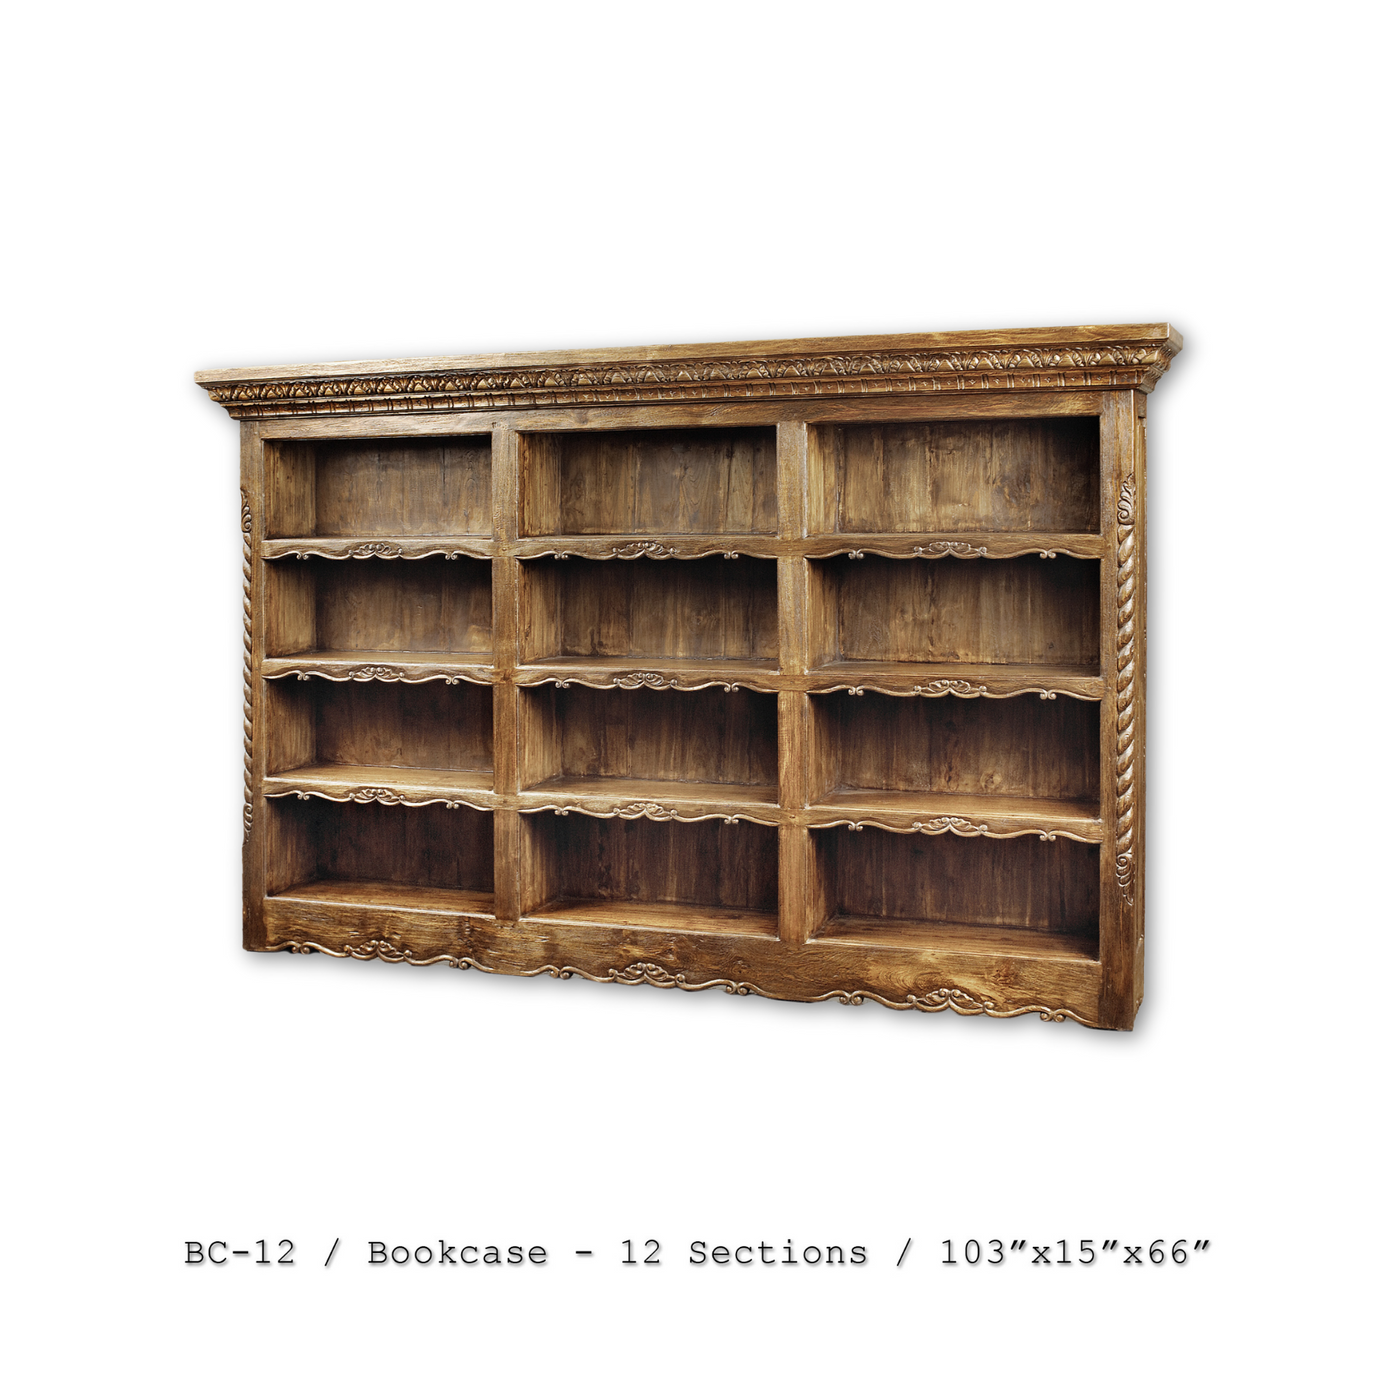 BC-12 Bookcase